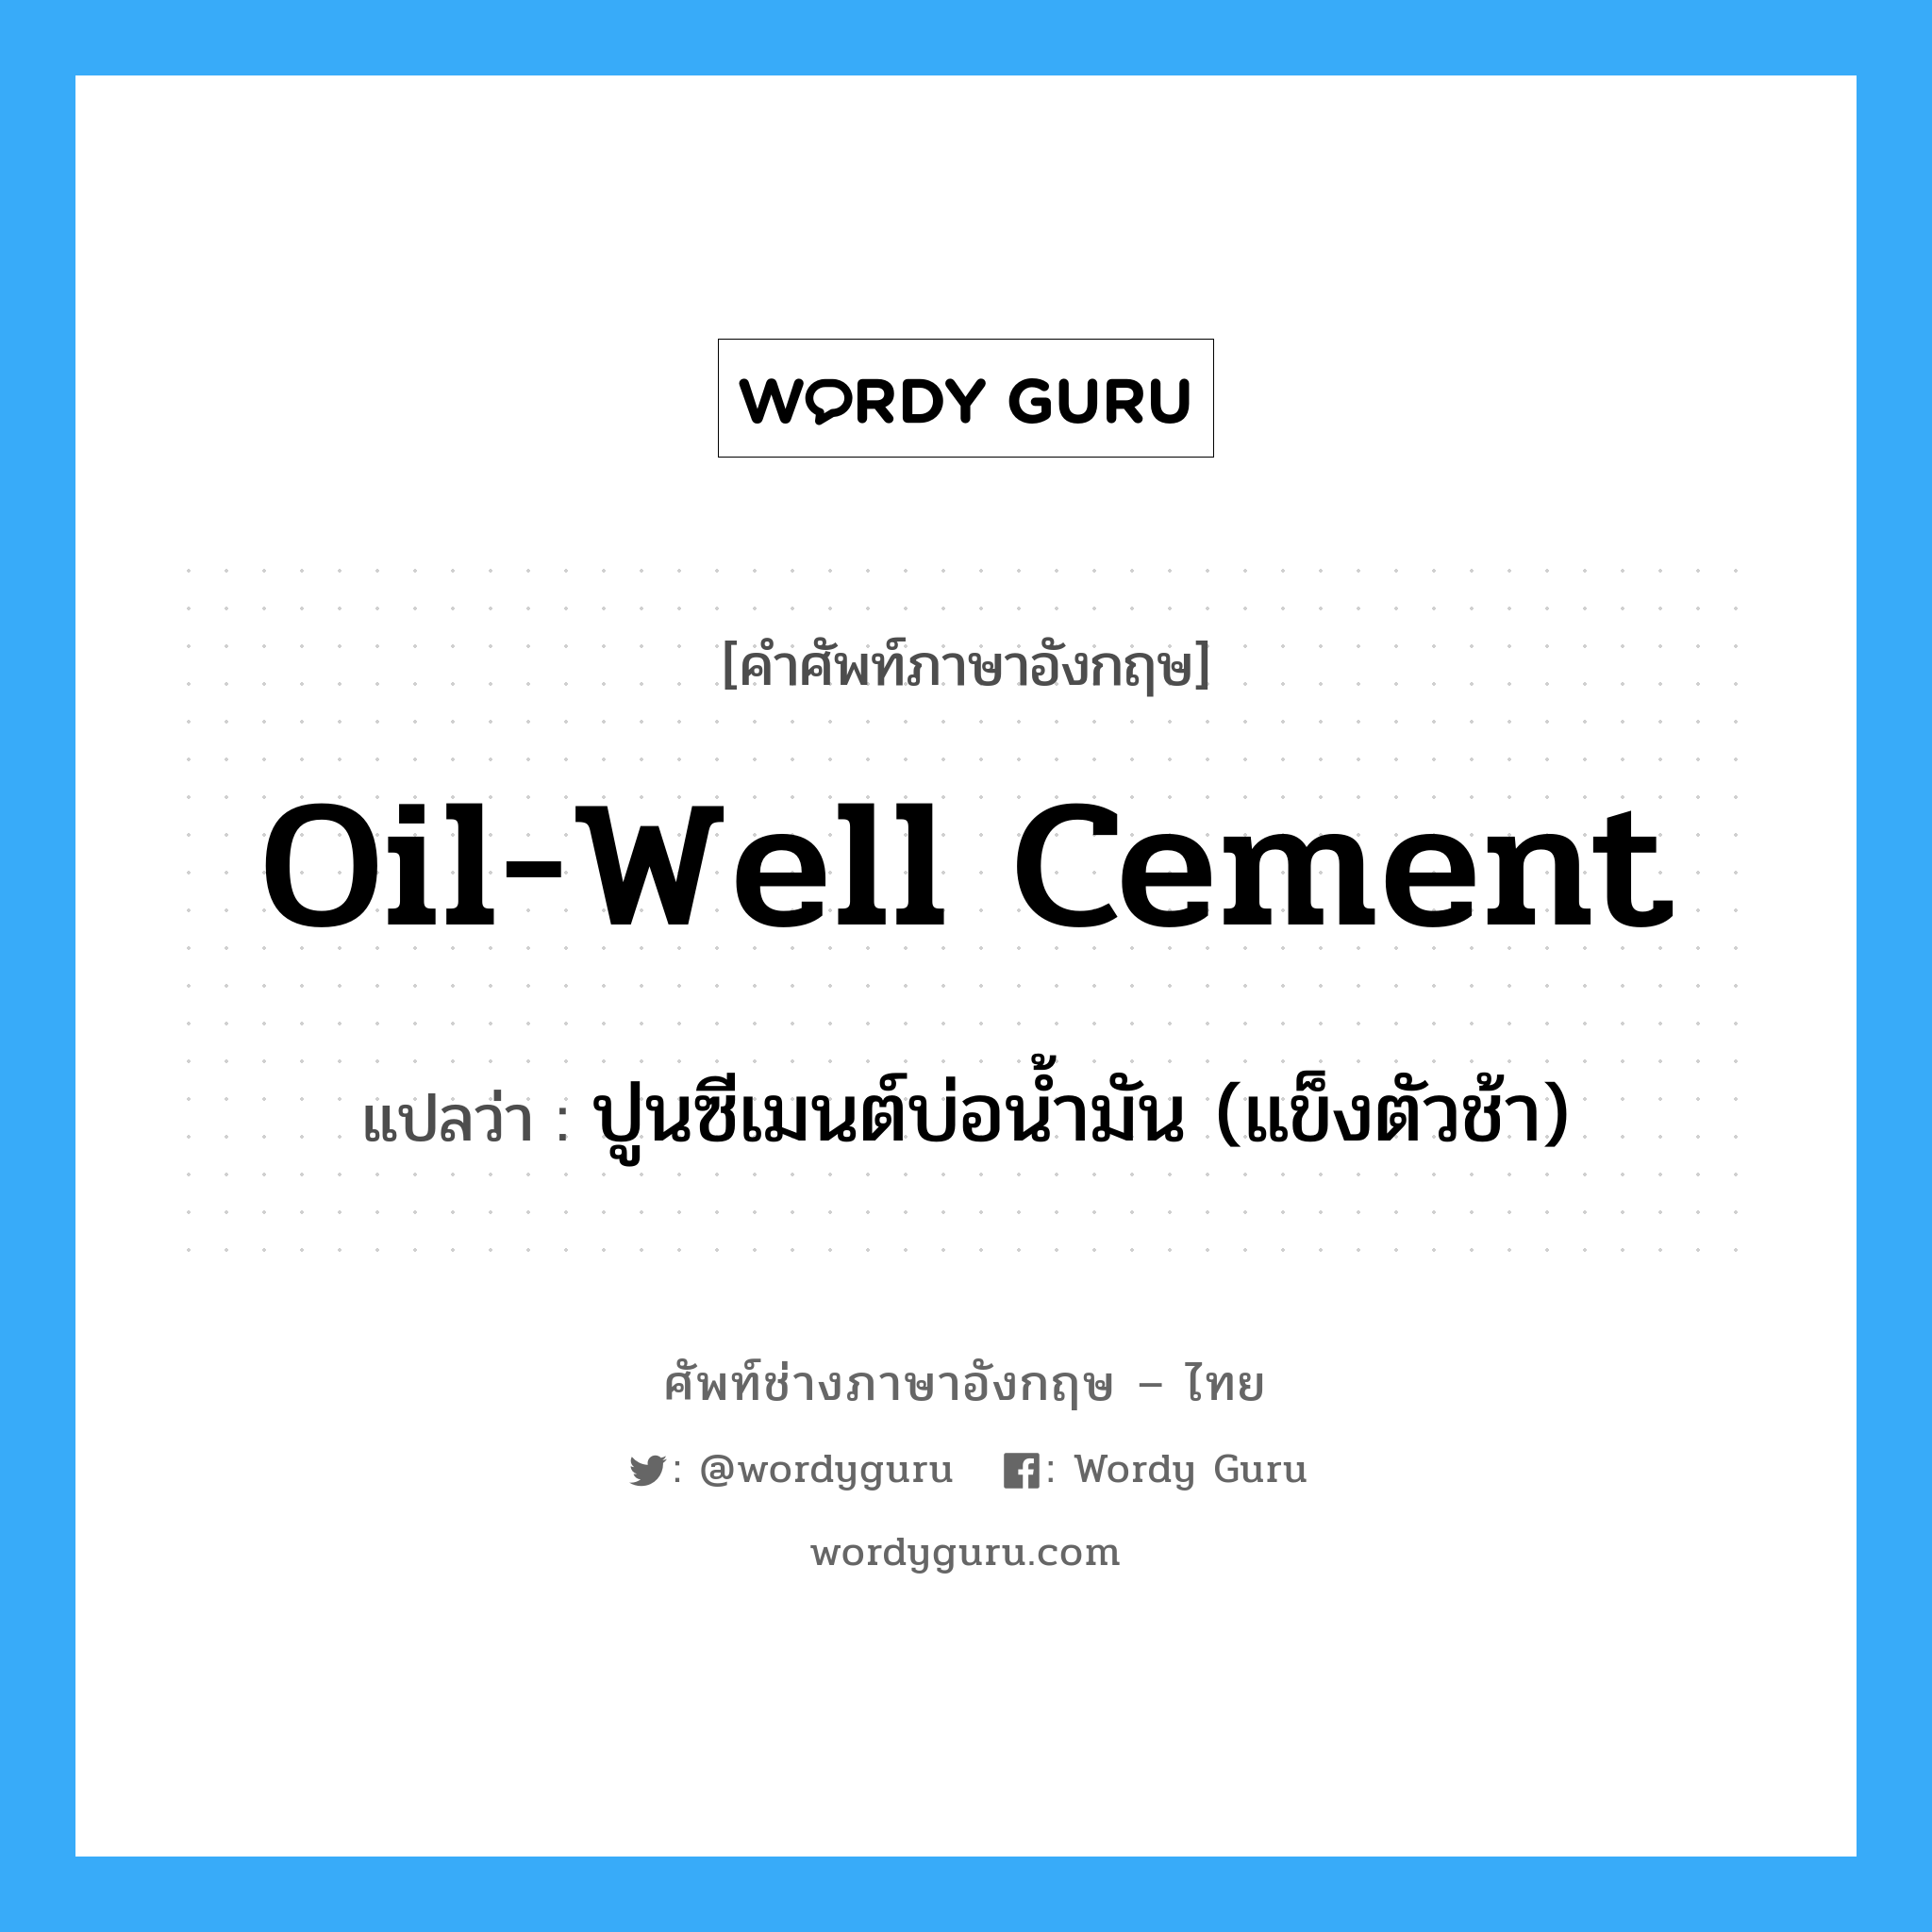 ปูนซีเมนต์บ่อน้ำมัน (แข็งตัวช้า) ภาษาอังกฤษ?, คำศัพท์ช่างภาษาอังกฤษ - ไทย ปูนซีเมนต์บ่อน้ำมัน (แข็งตัวช้า) คำศัพท์ภาษาอังกฤษ ปูนซีเมนต์บ่อน้ำมัน (แข็งตัวช้า) แปลว่า oil-well cement